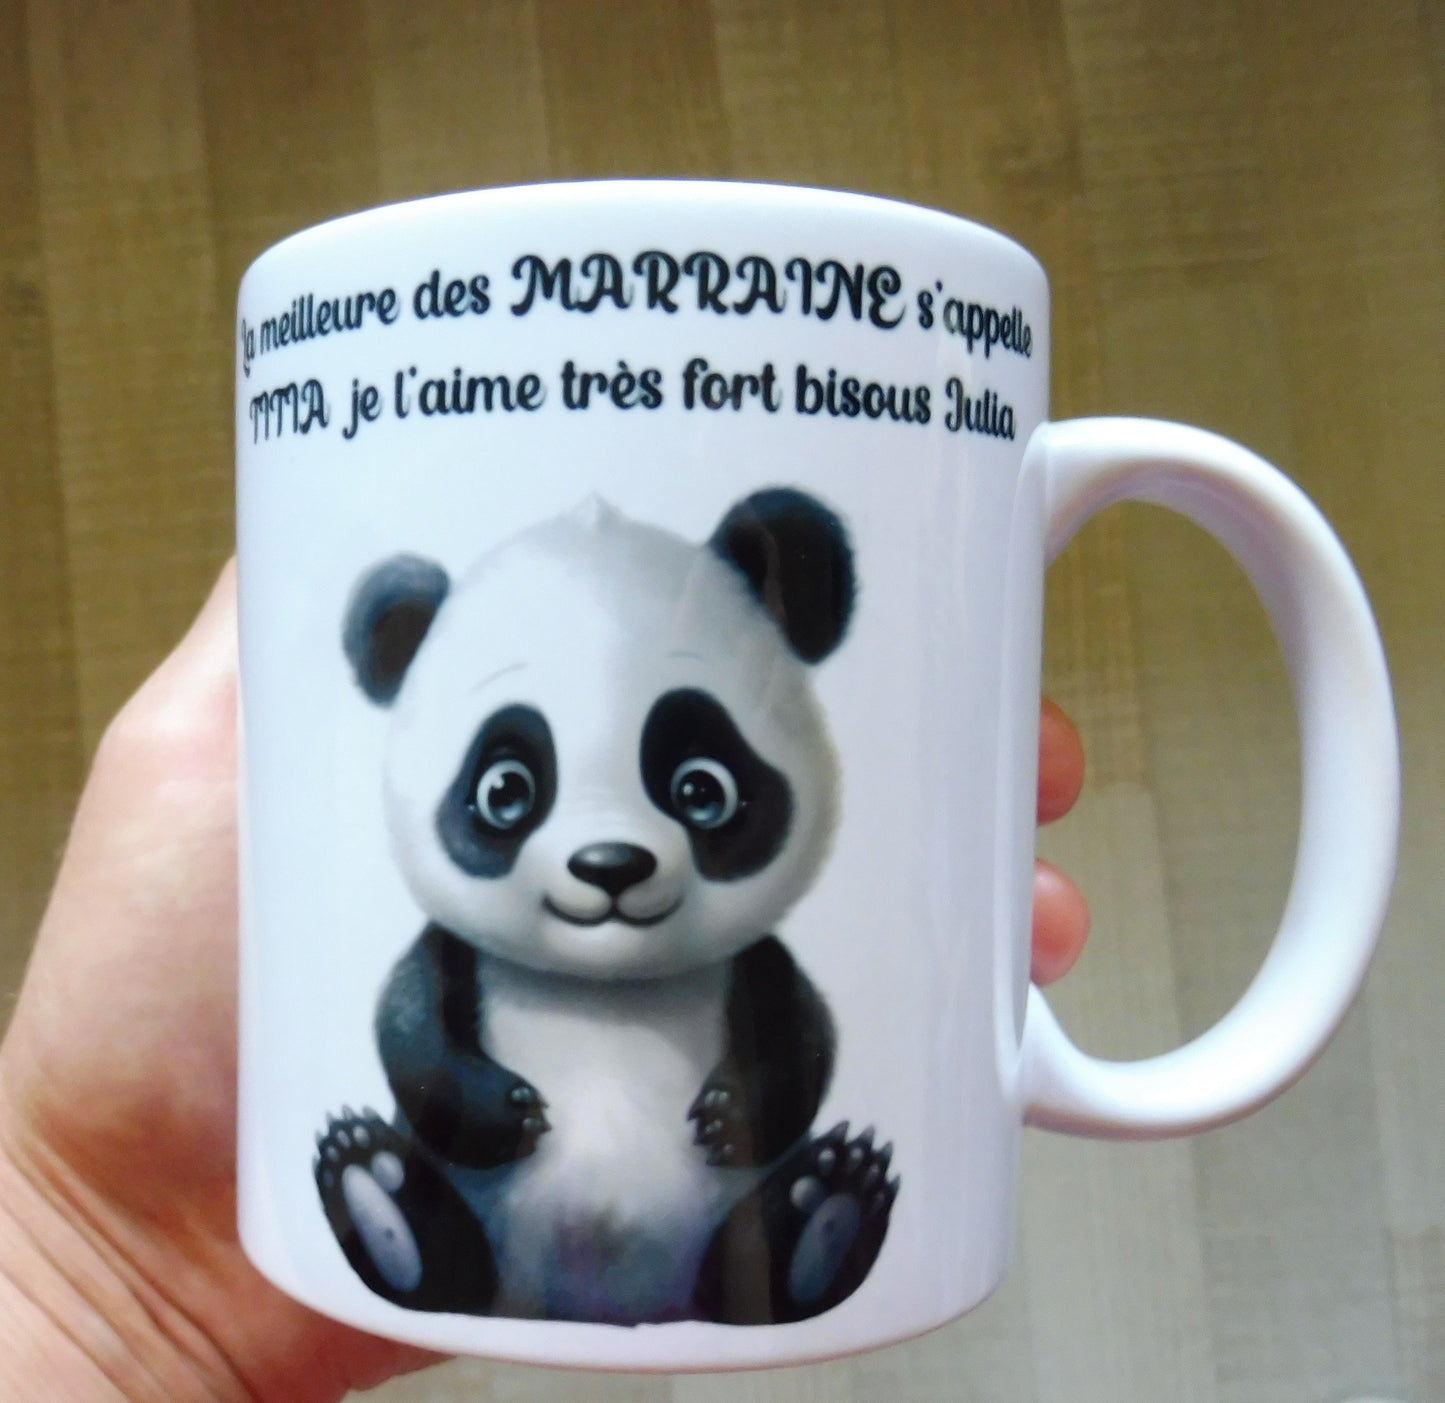 Personalized panda mug with text